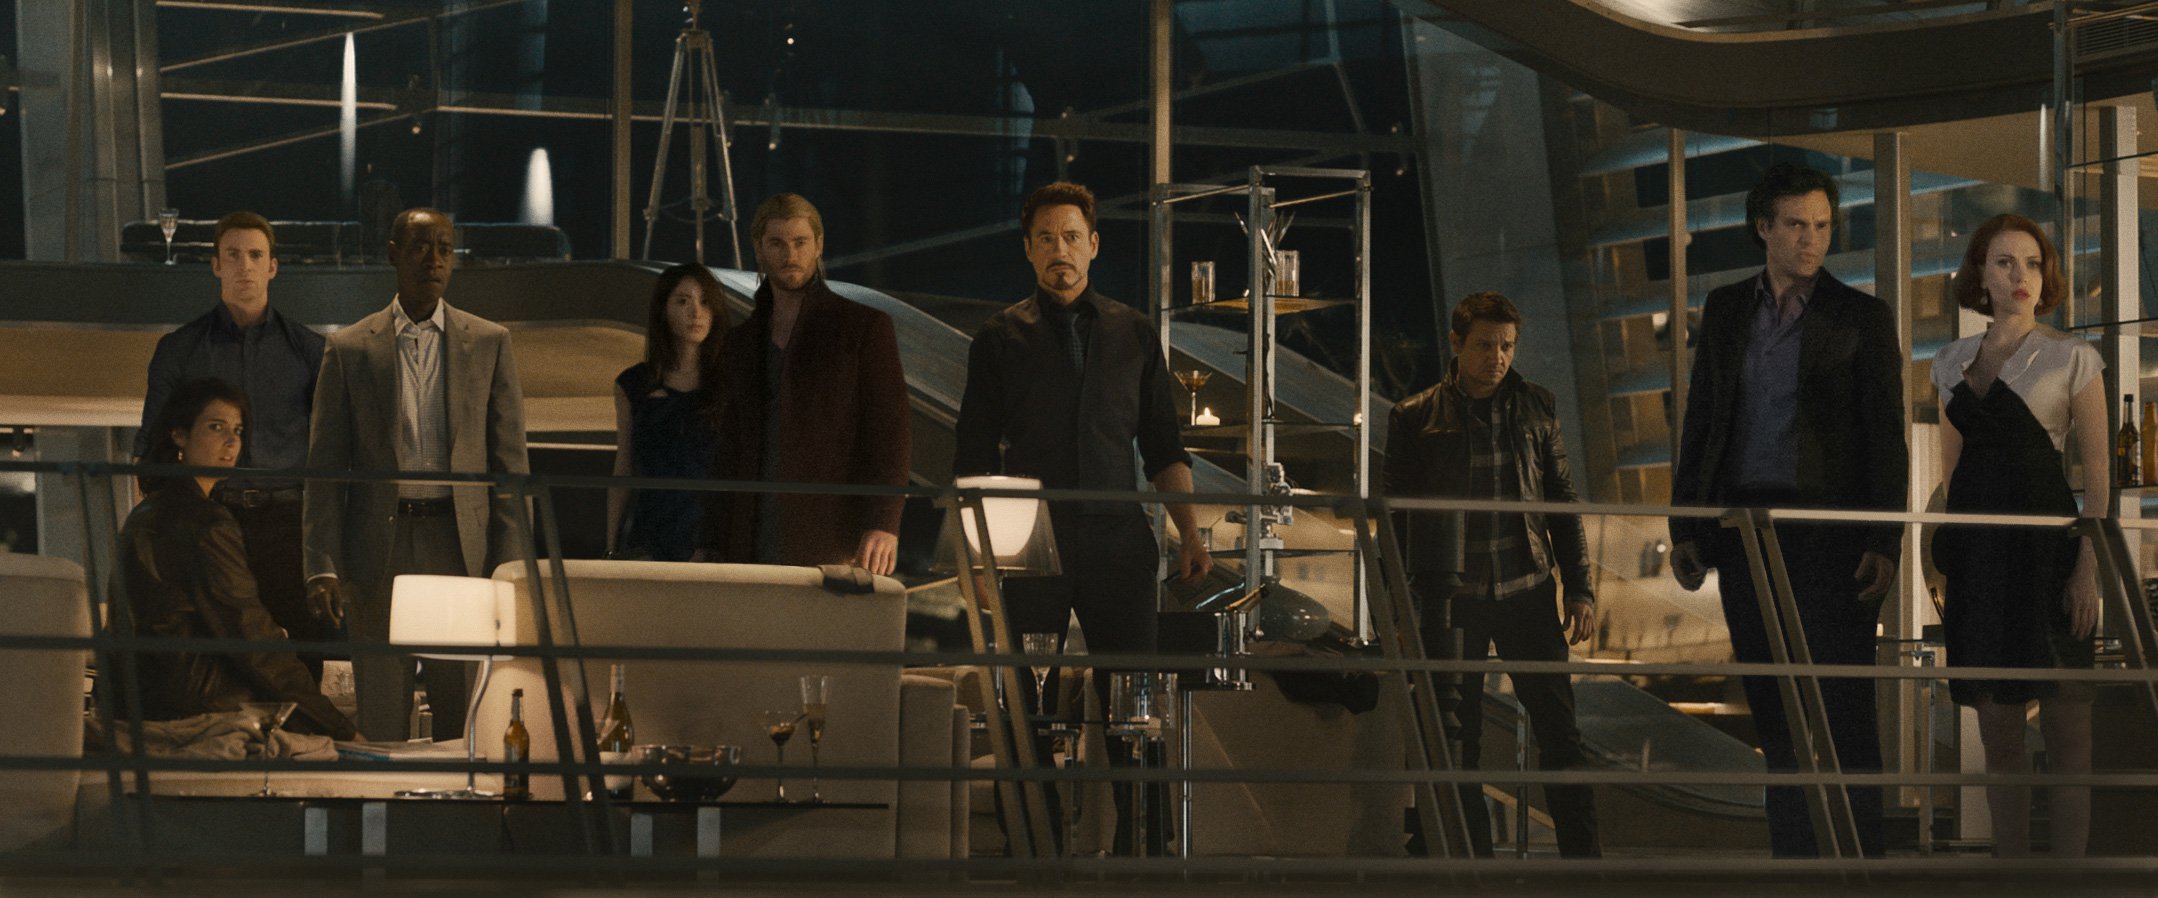 Avengers party scene